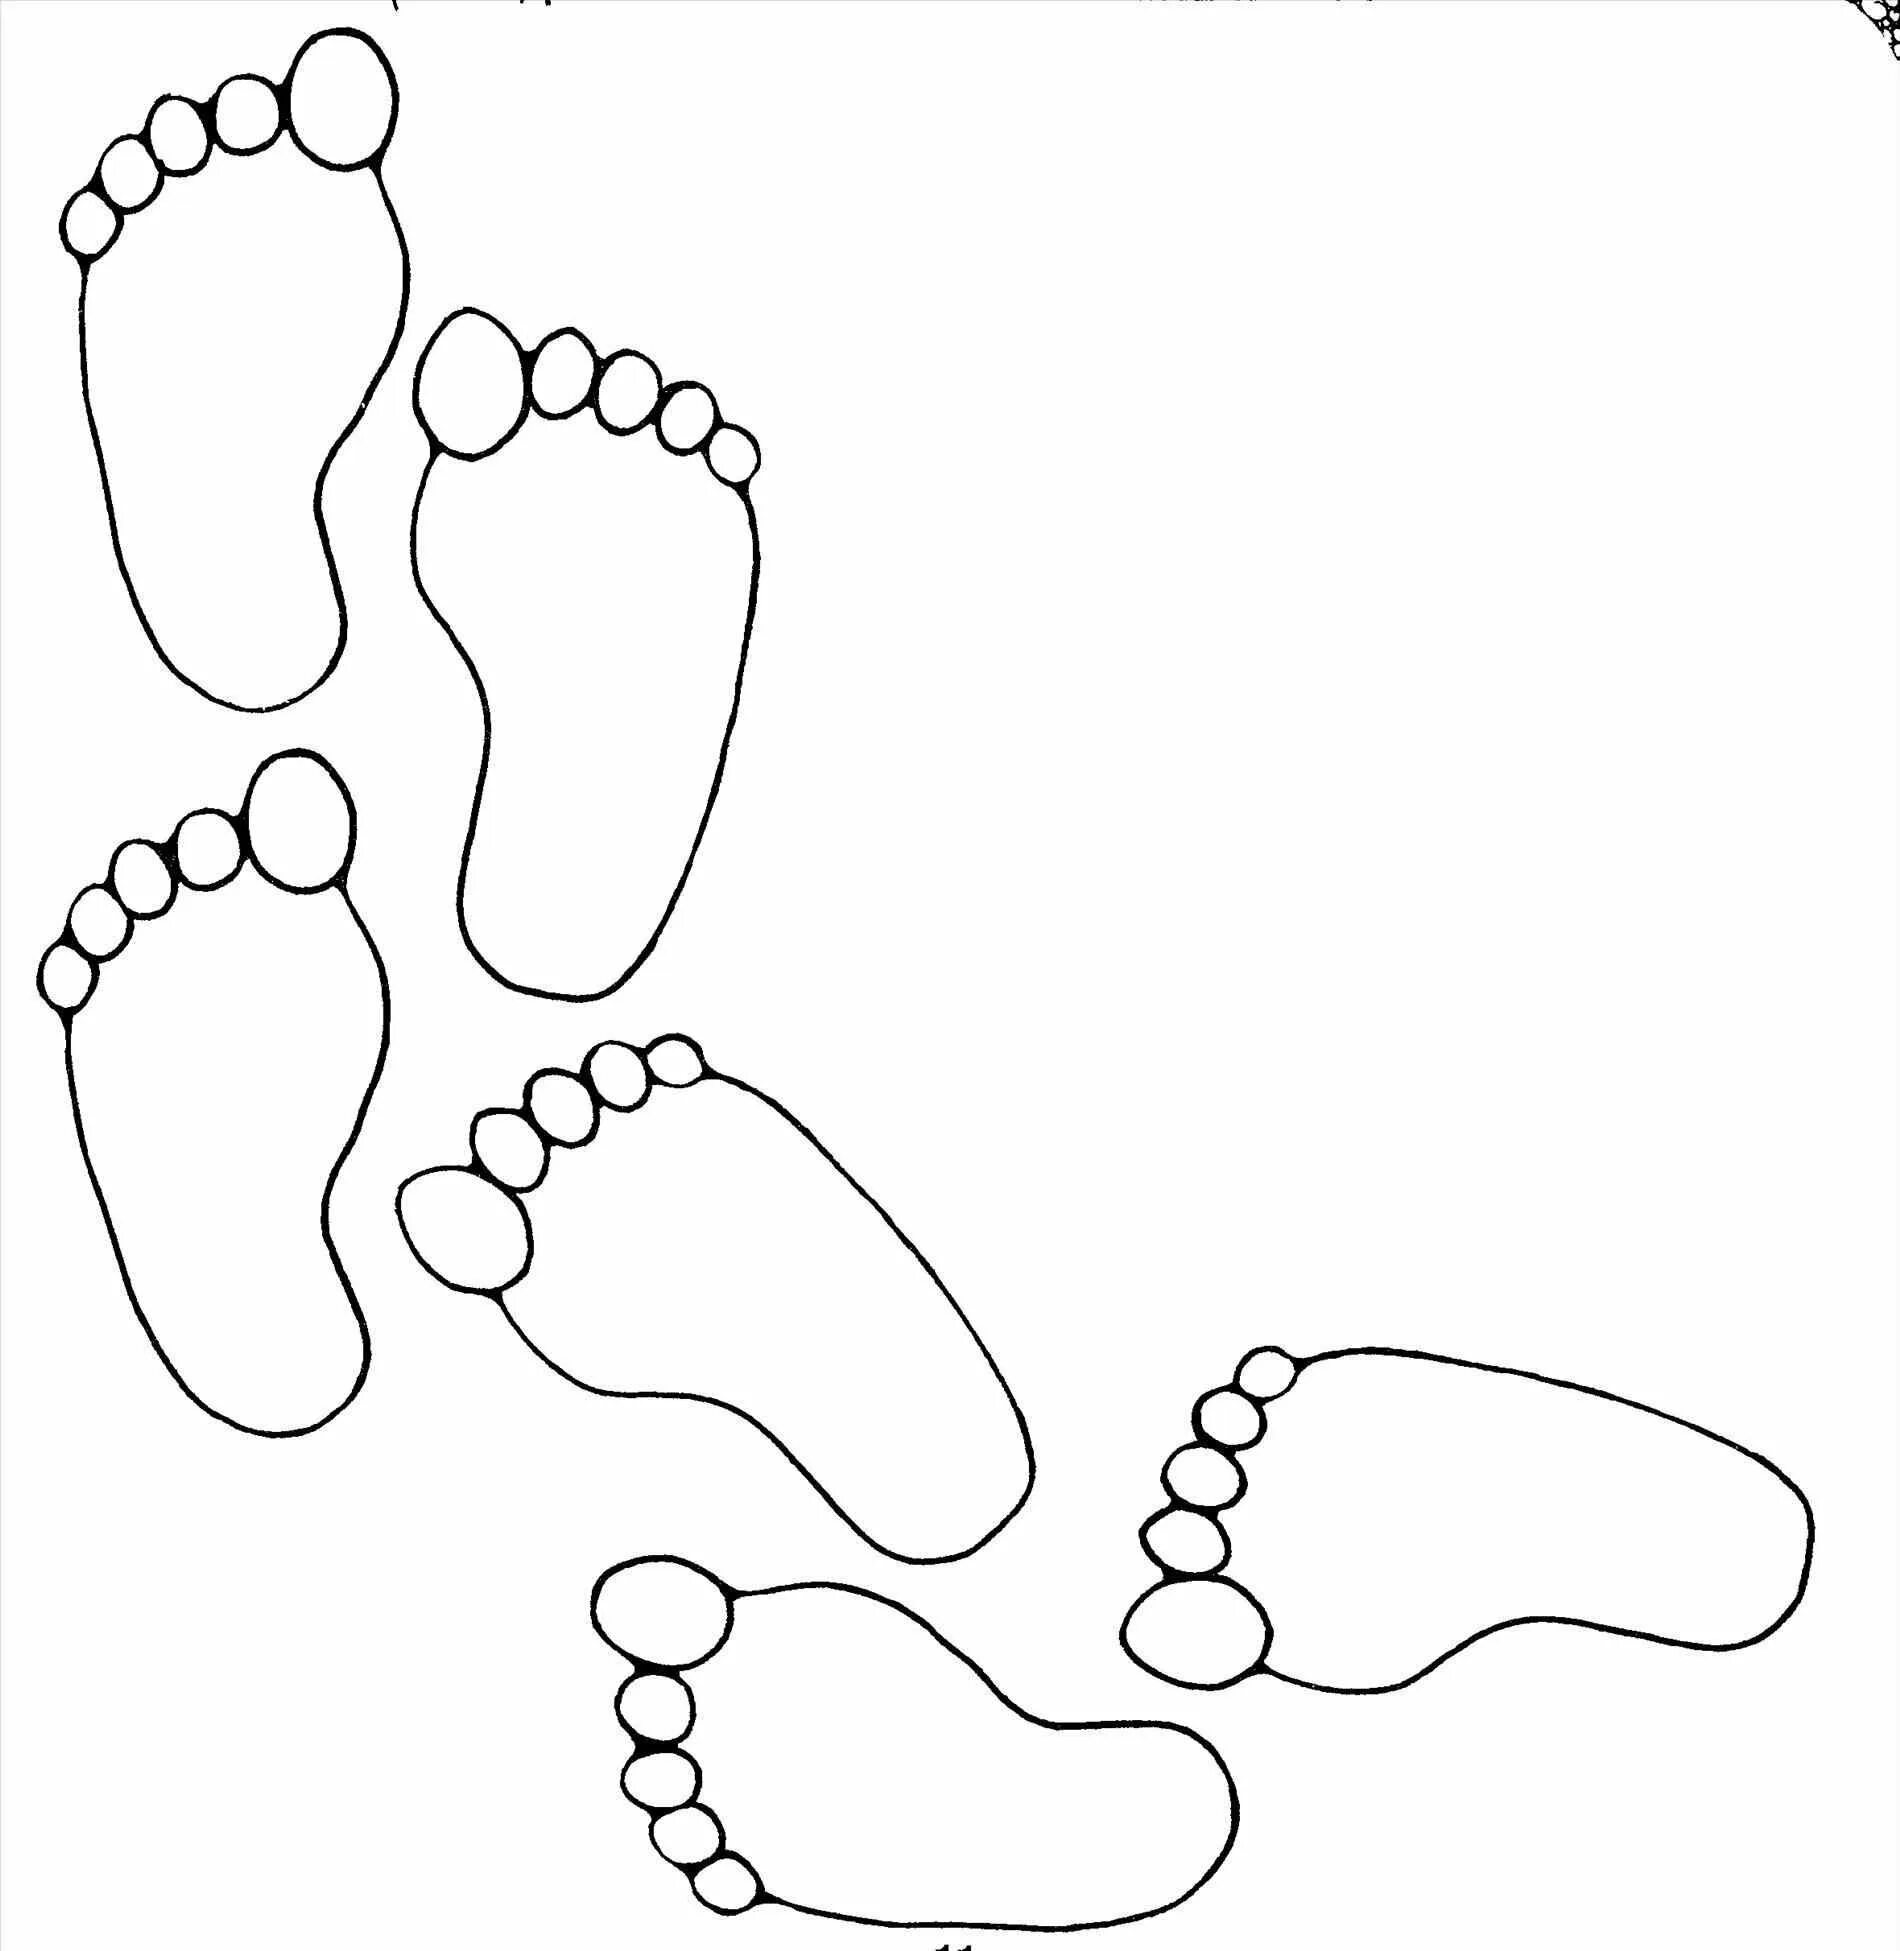 Footprints for kids #17